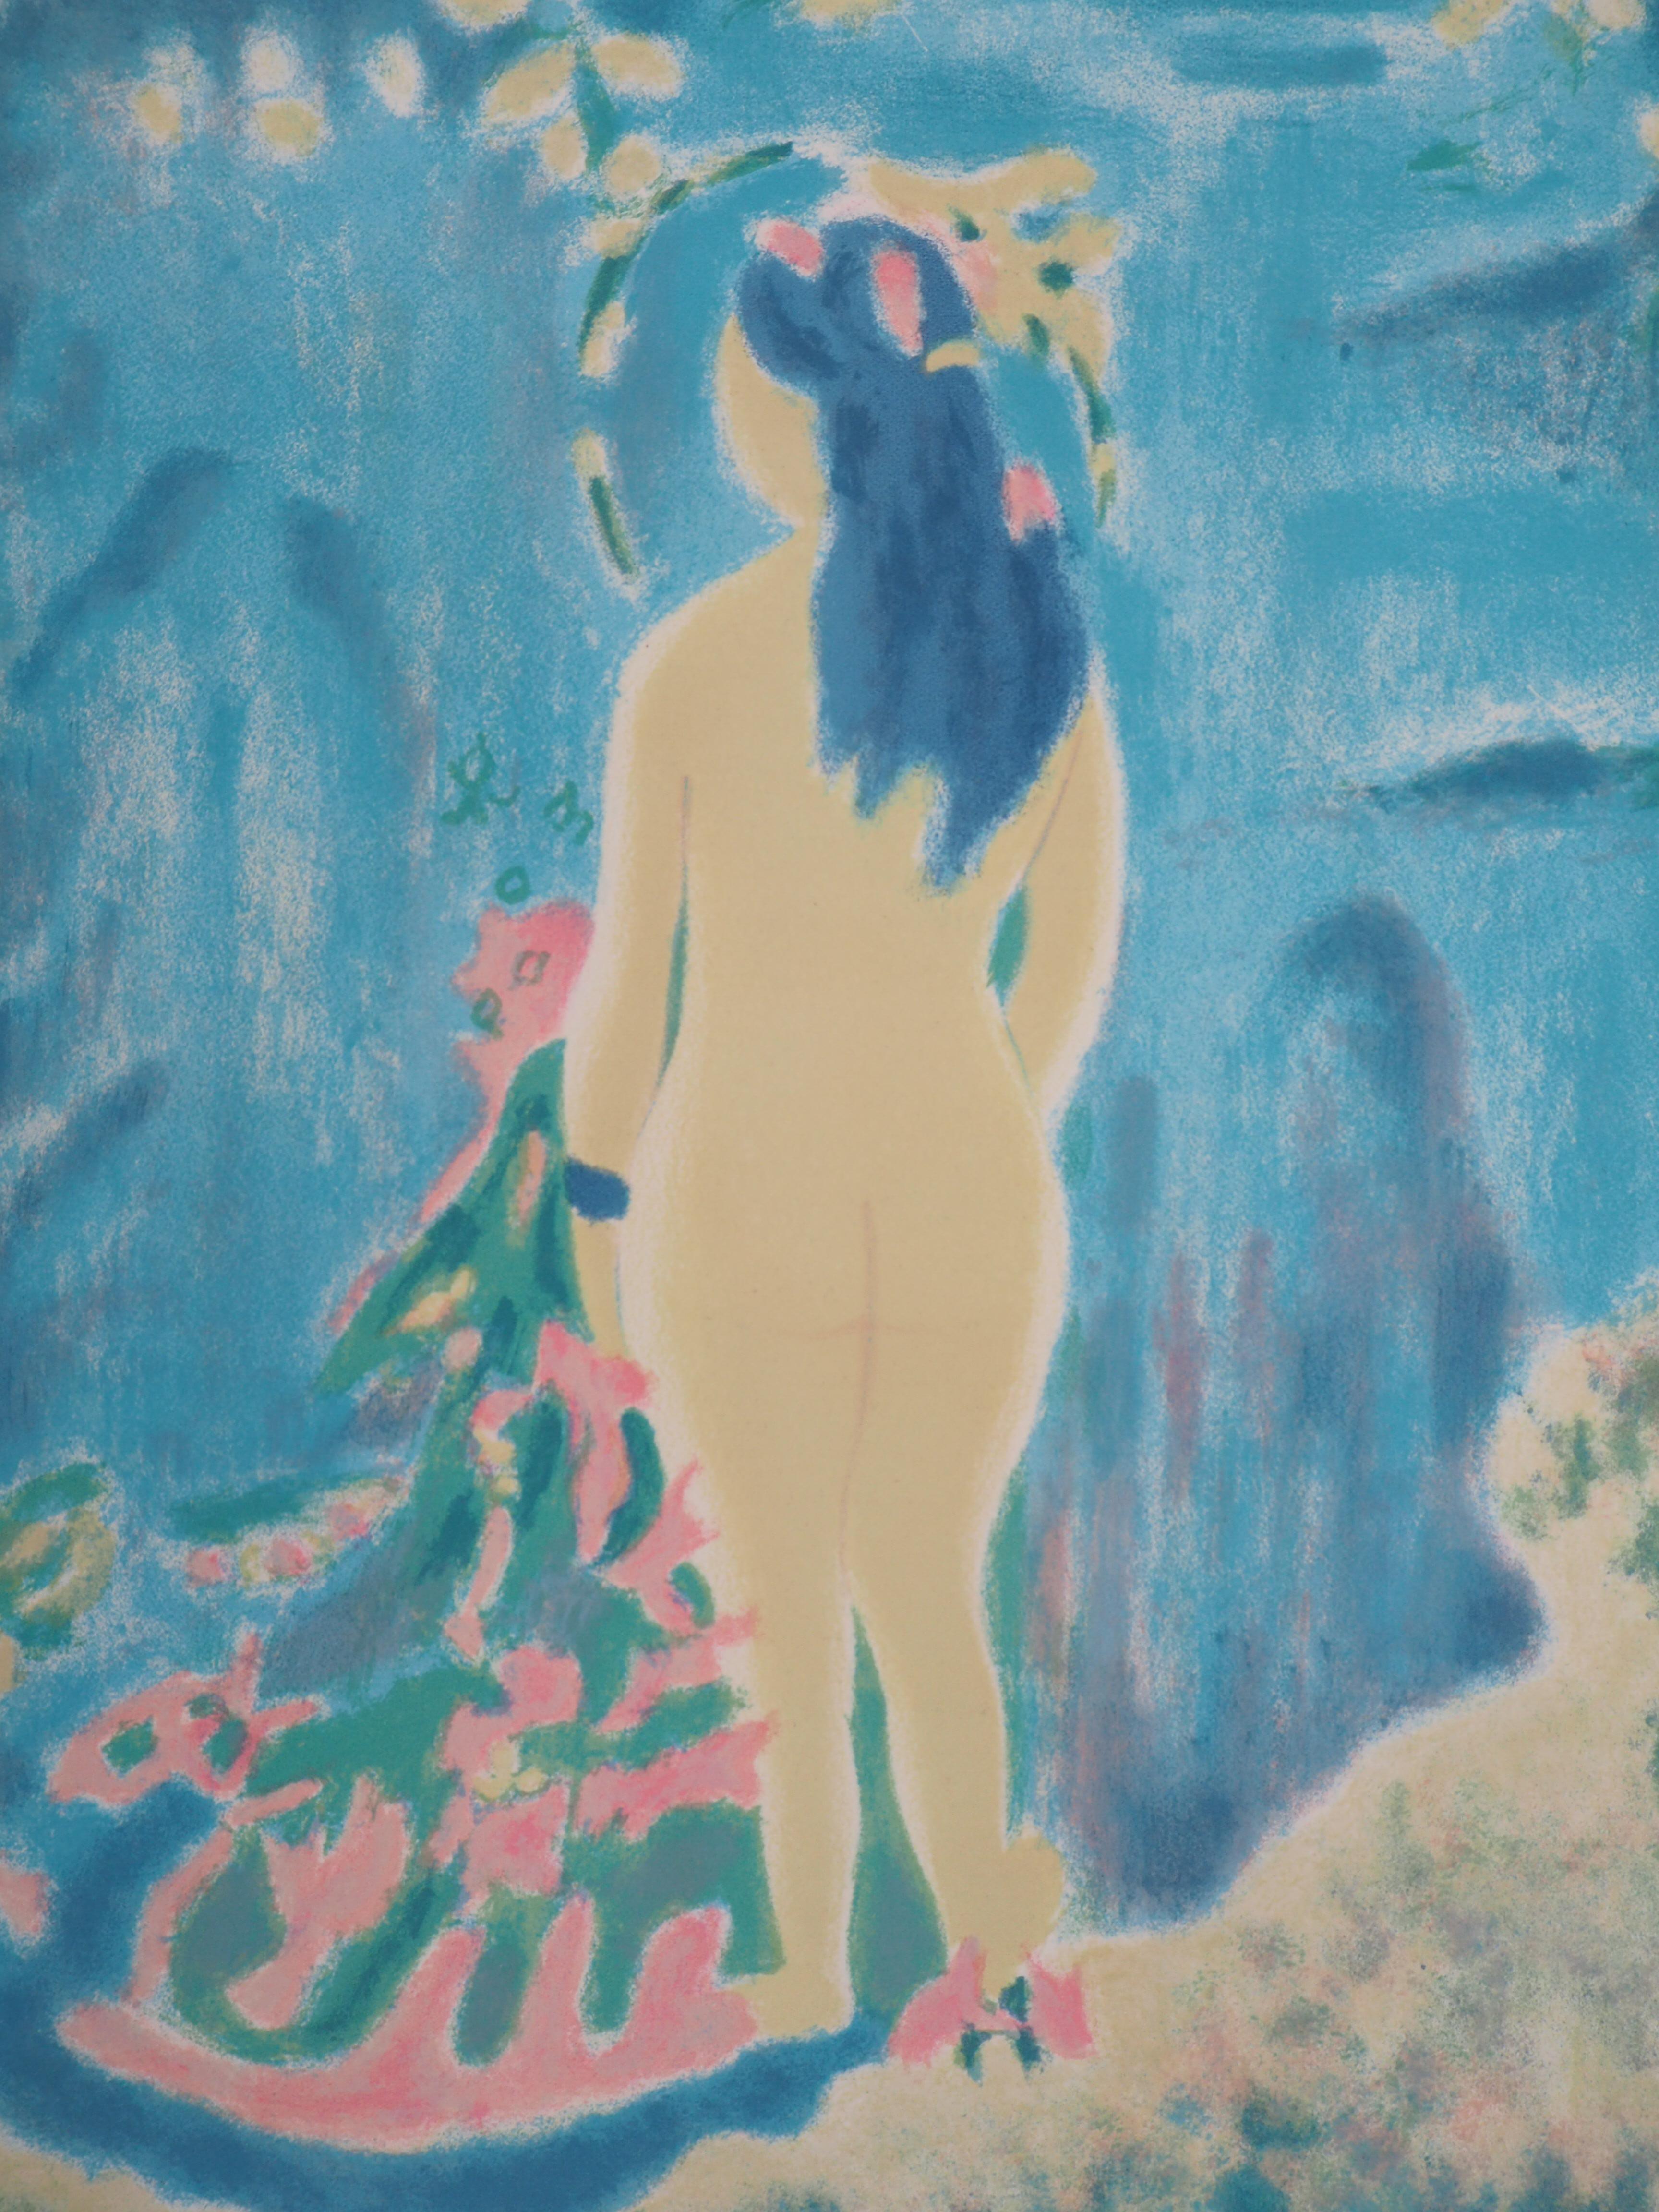 Jules CAVAILLES
Hommage à Cézanne : Le baigneur, 1966

Lithographie originale
Signé à la main au crayon
Sur vélin de Rives 37 x 28 cm (environ 15 x 11 pouces)

Excellent état